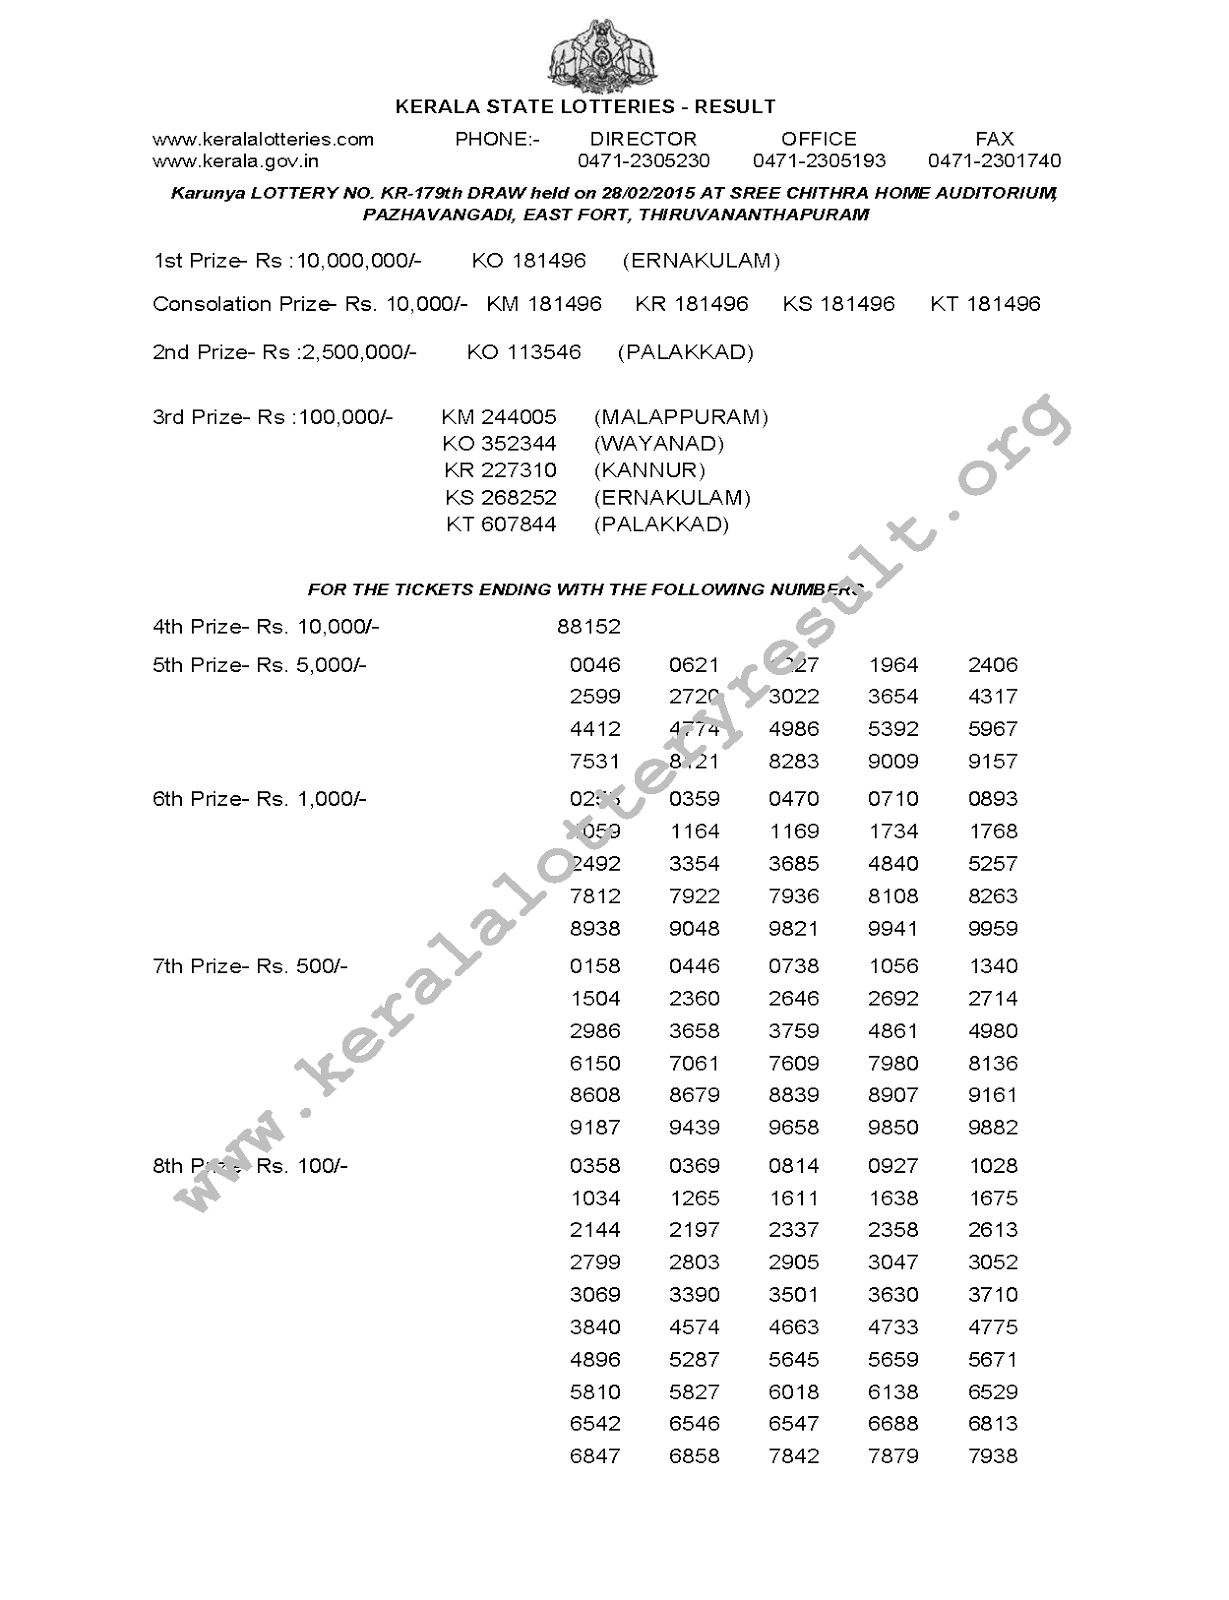 KARUNYA Lottery KR 179 Result 28-2-2015